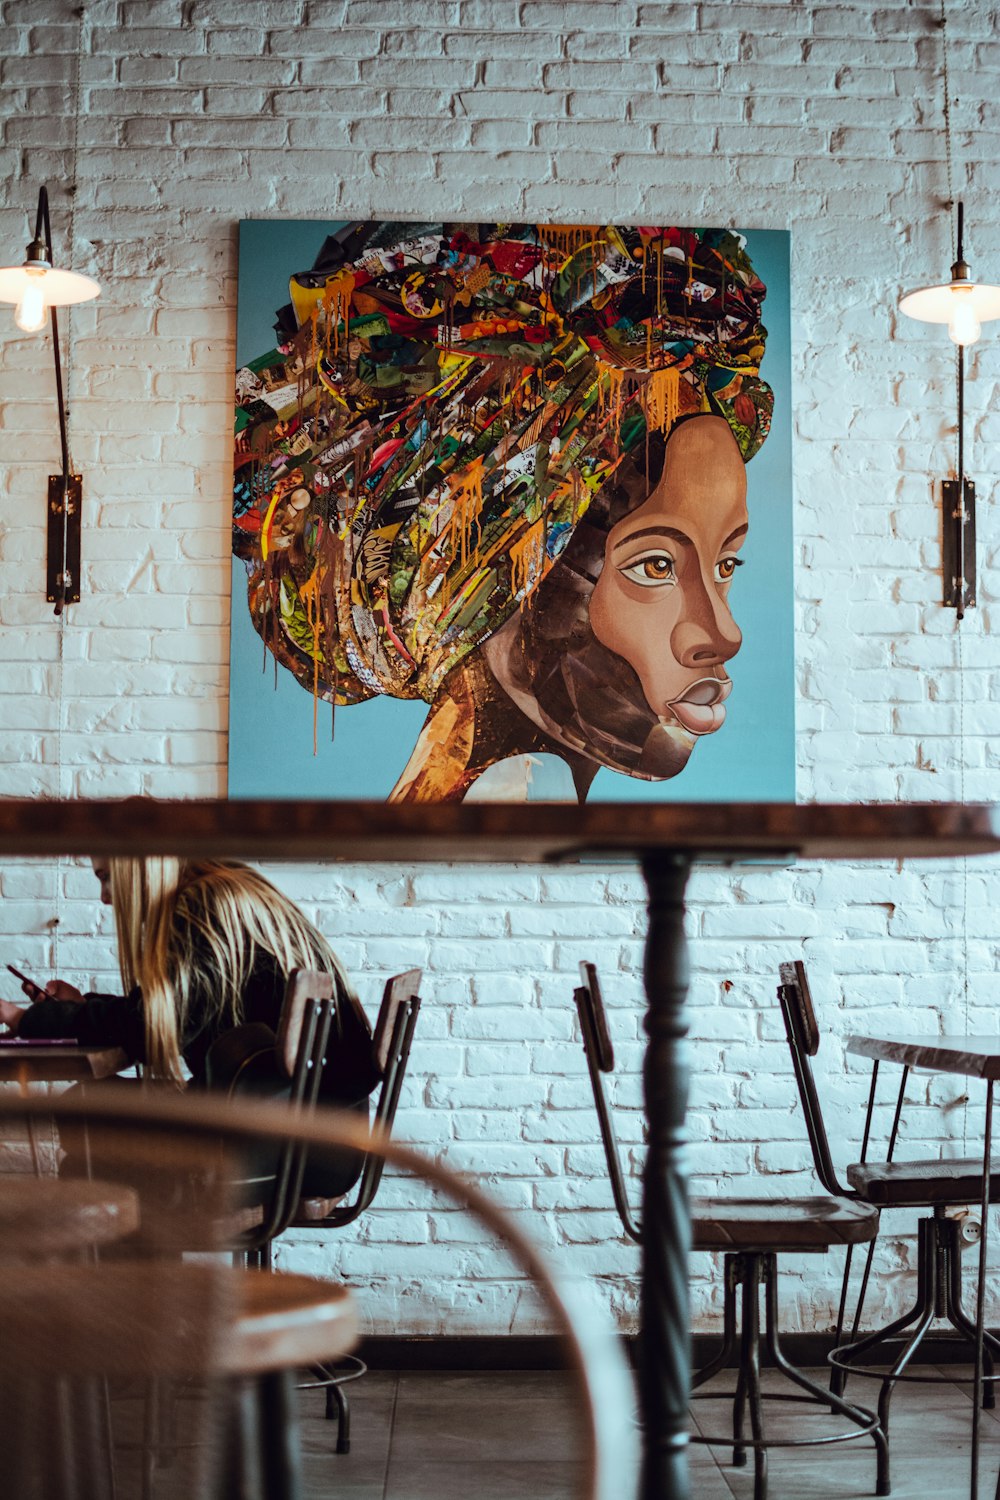 mehrfarbiges Gemälde eines Frauenporträts, das an der Wand hängt